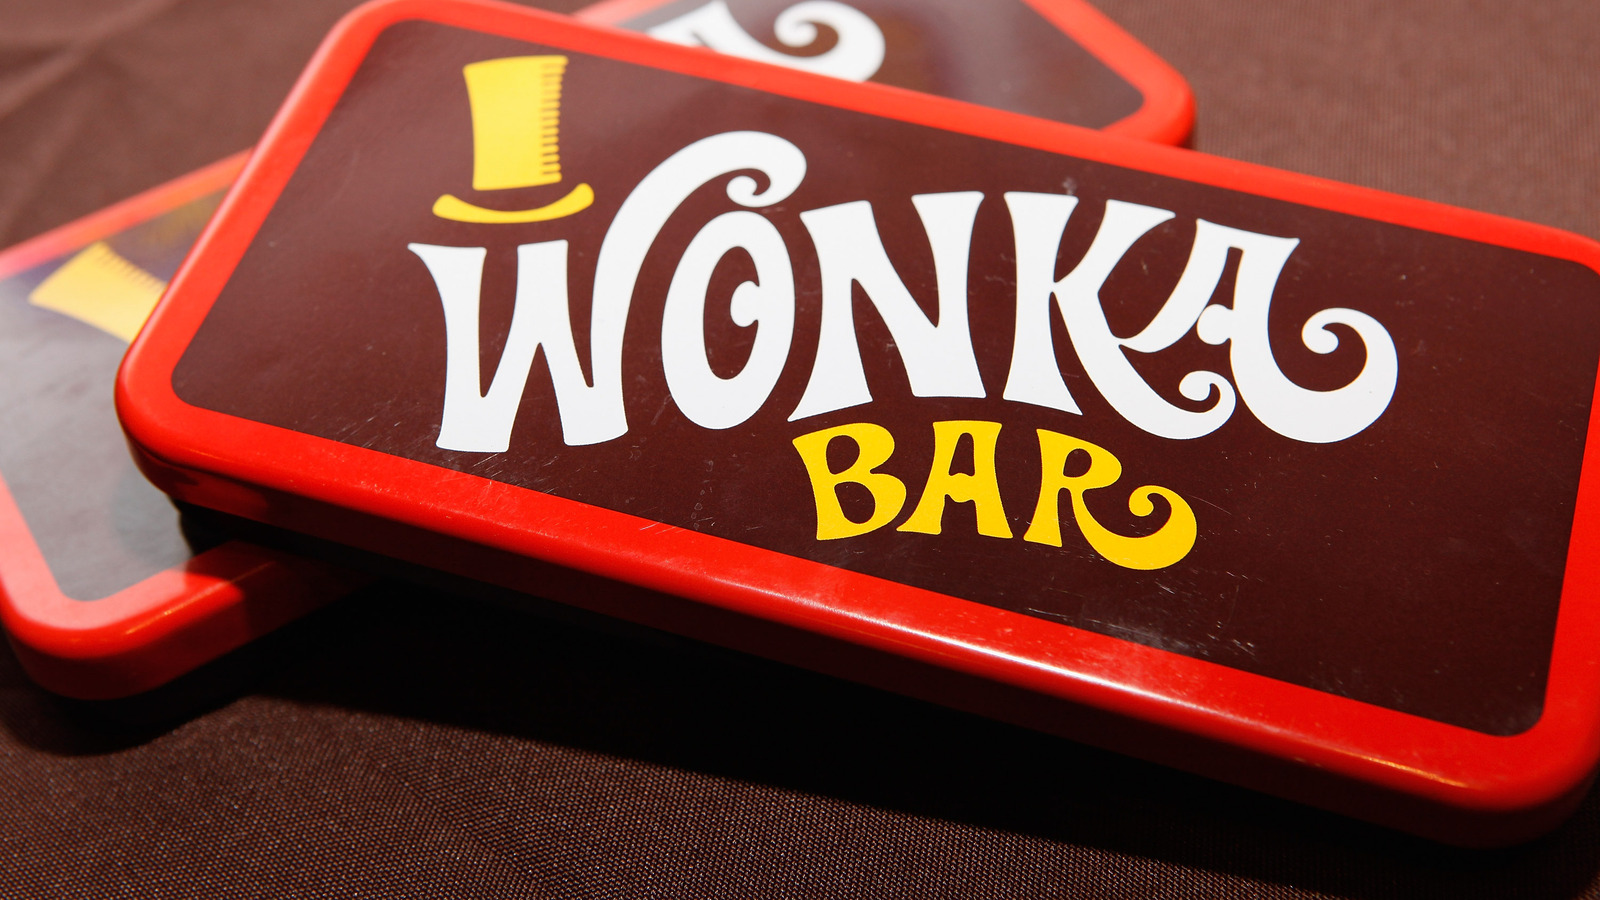 Original Willy Wonka Chocolate Bars